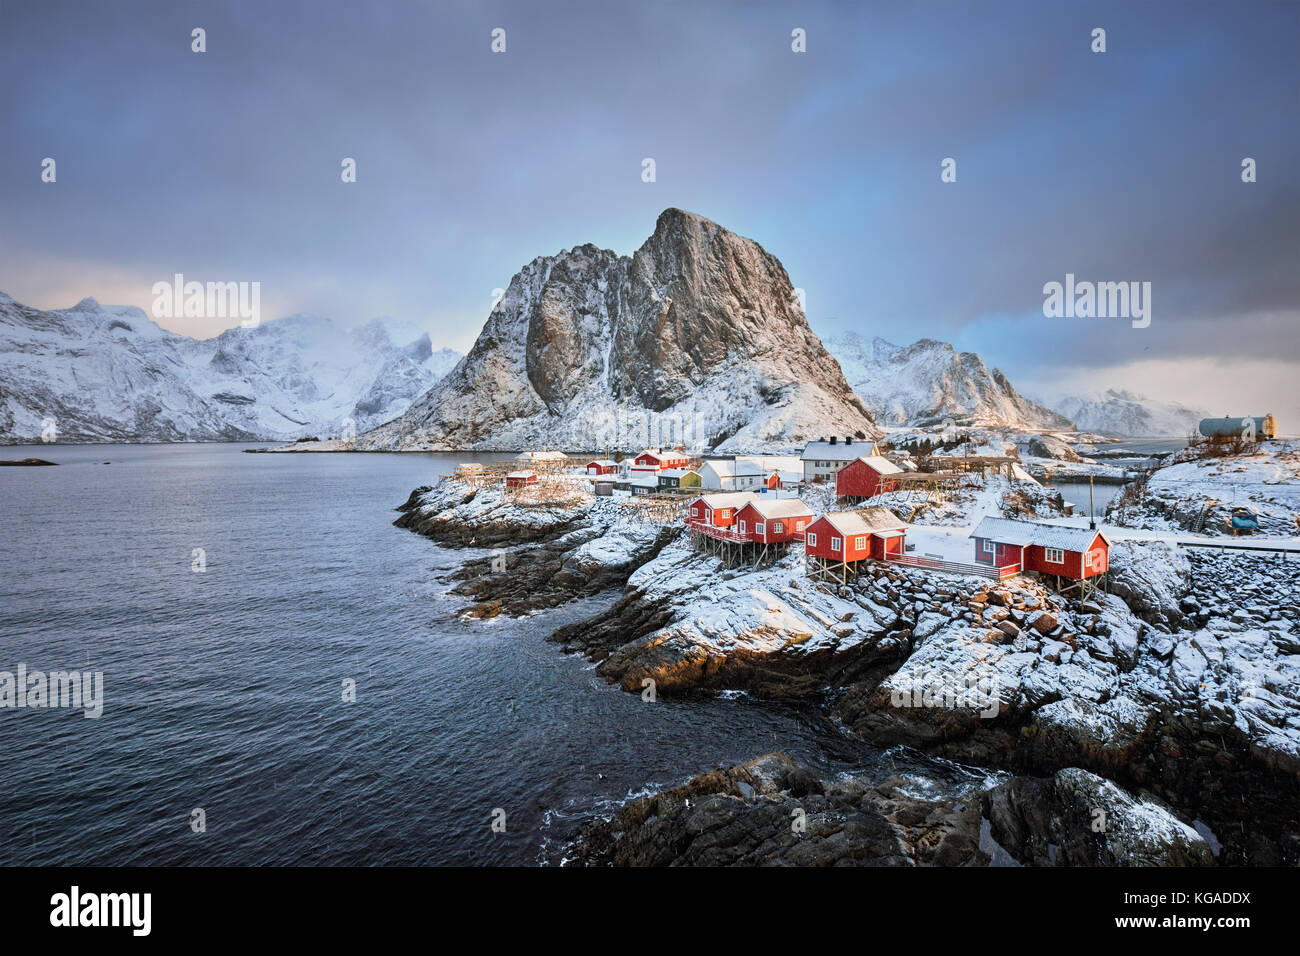 Hamnoy villaggio di pescatori sulle isole Lofoten in Norvegia Foto Stock